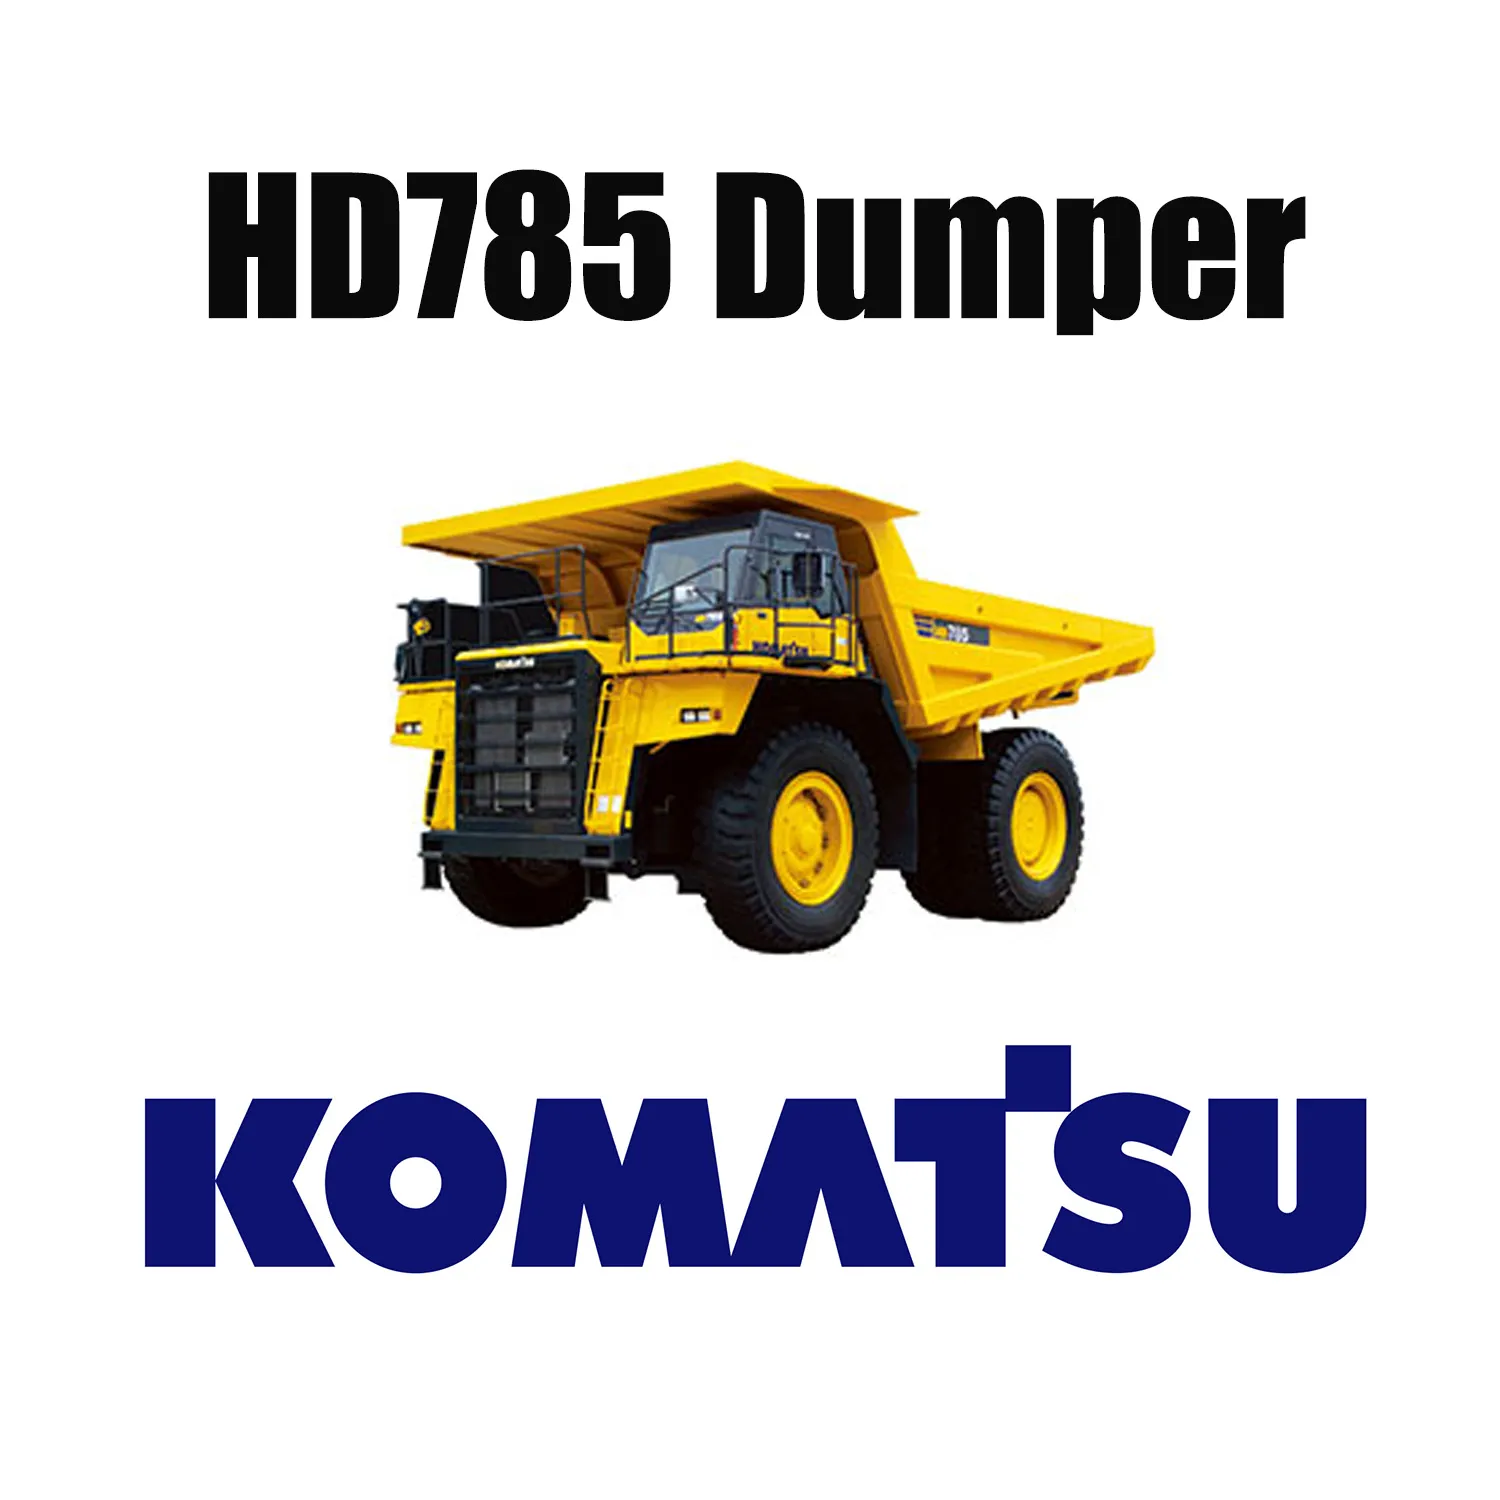 Pneus OTR resistentes para mineração 27.00R49 para caminhão basculante KOMATSU HD785